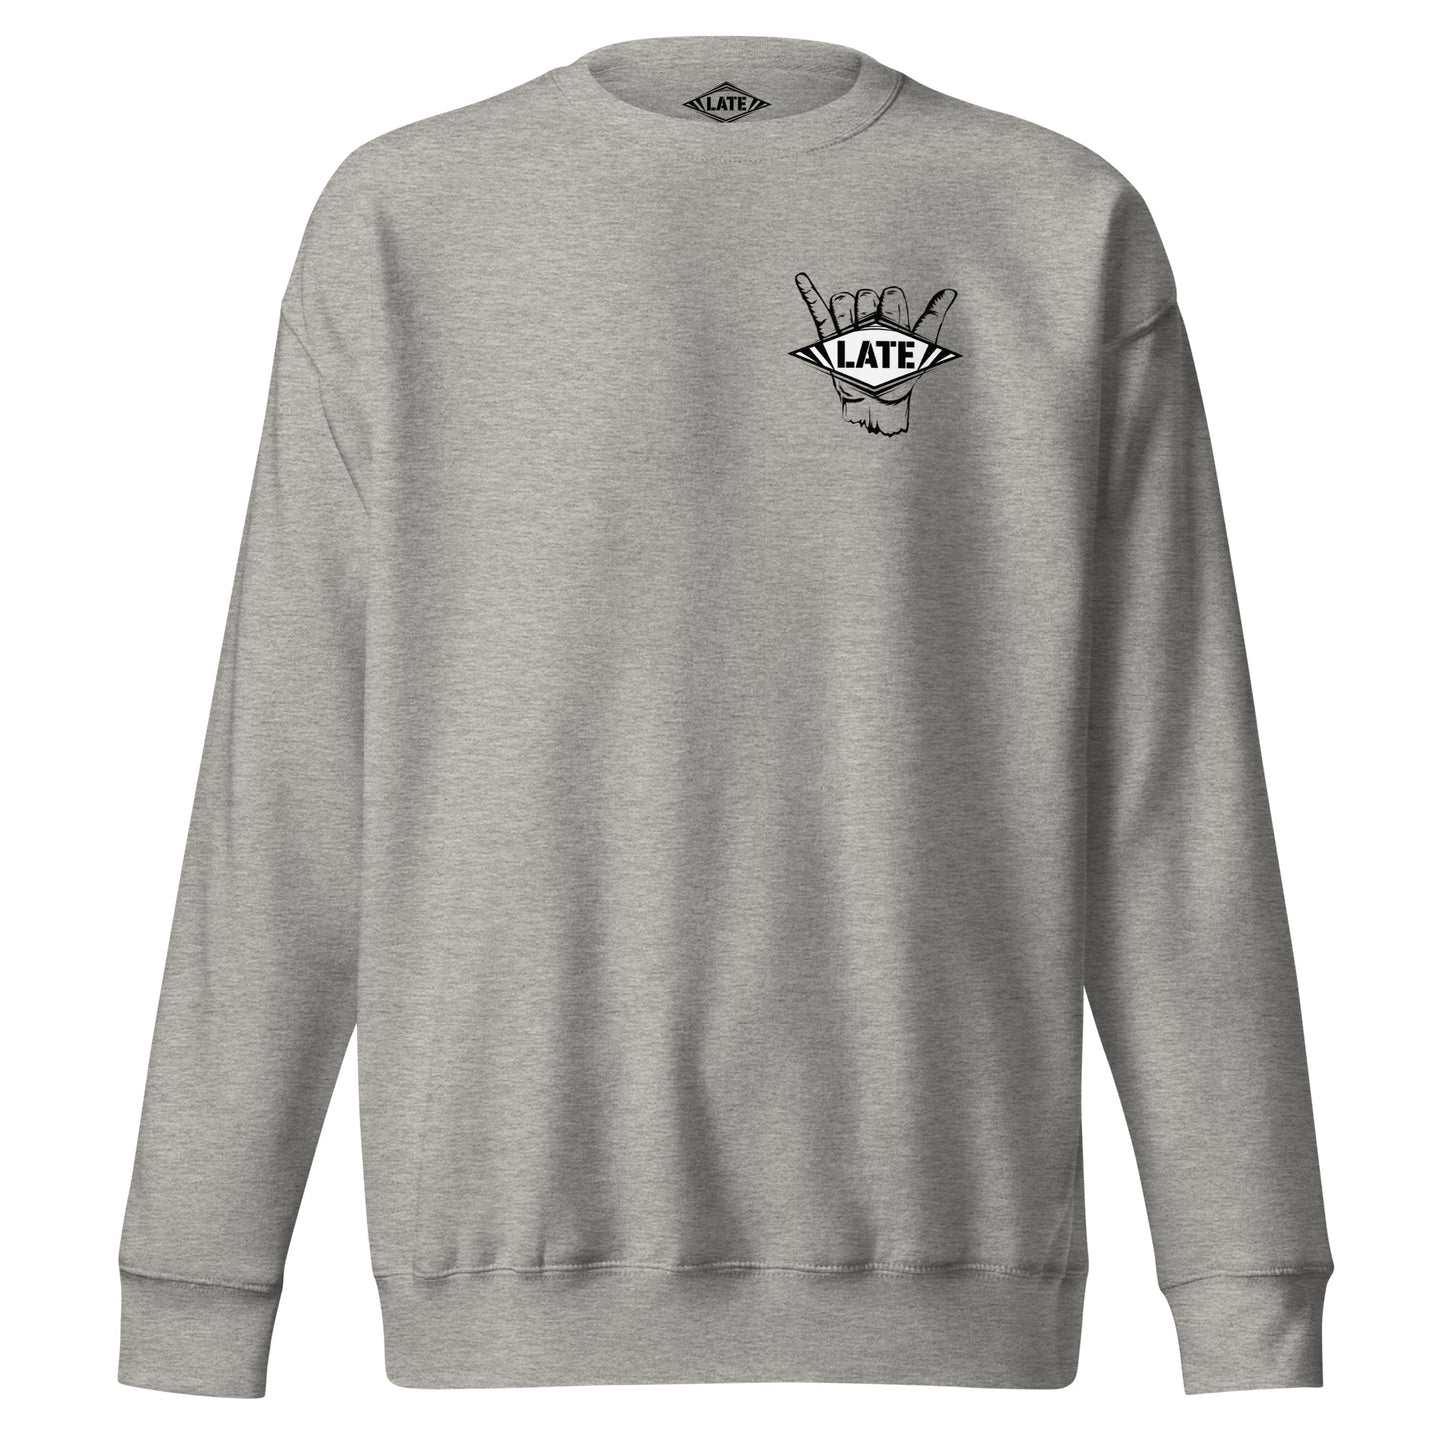 Sweatshirt Never Too Late shaka hand surfeur, avec le logo Late surfoard, sweat unisex de face couleur gris